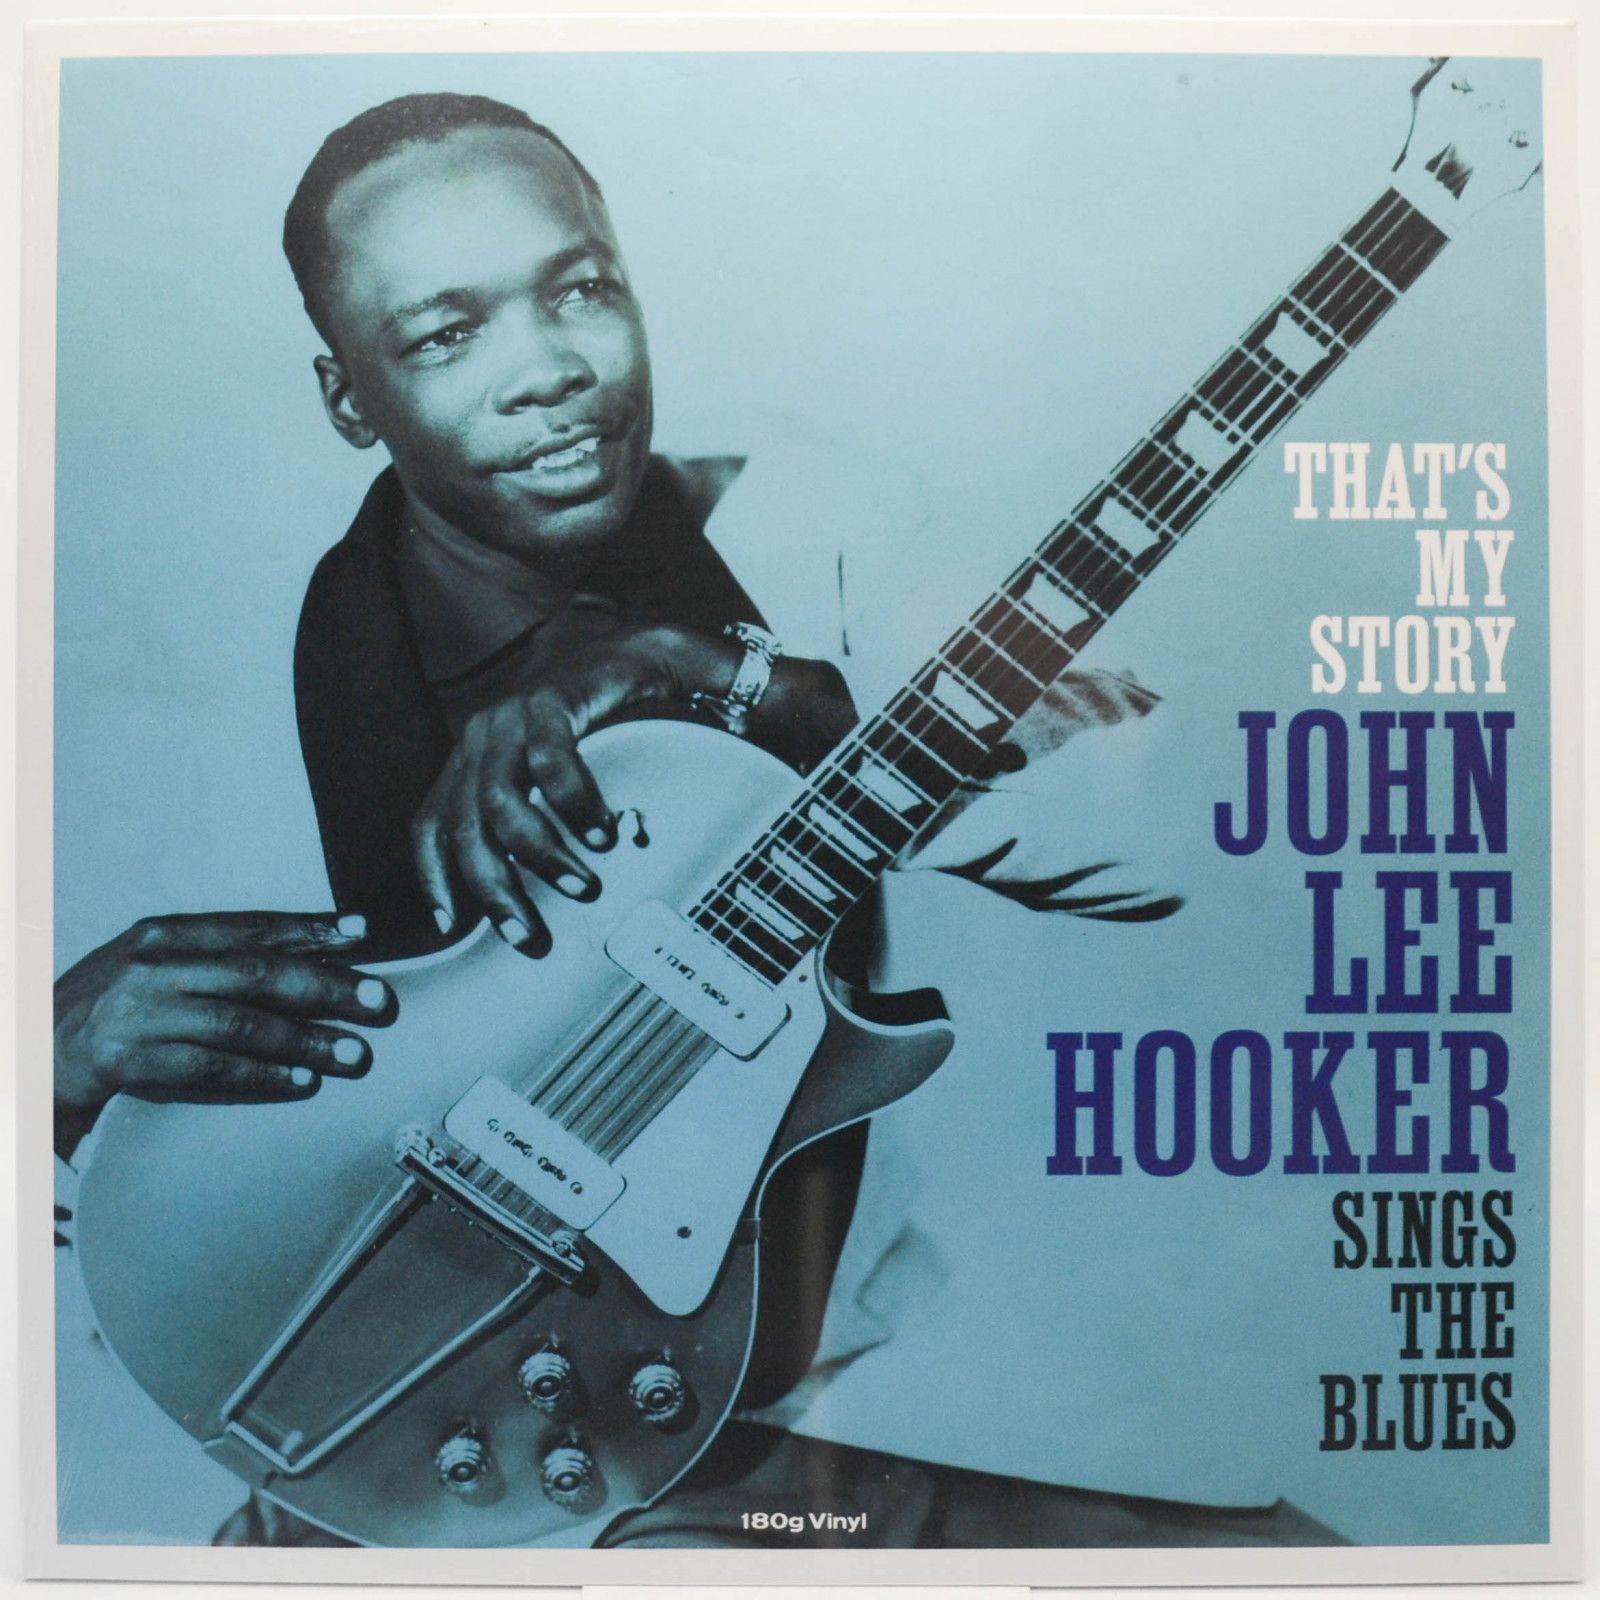 John Lee Hooker — That's My Story John Lee Hooker Sings The Blues, 1960